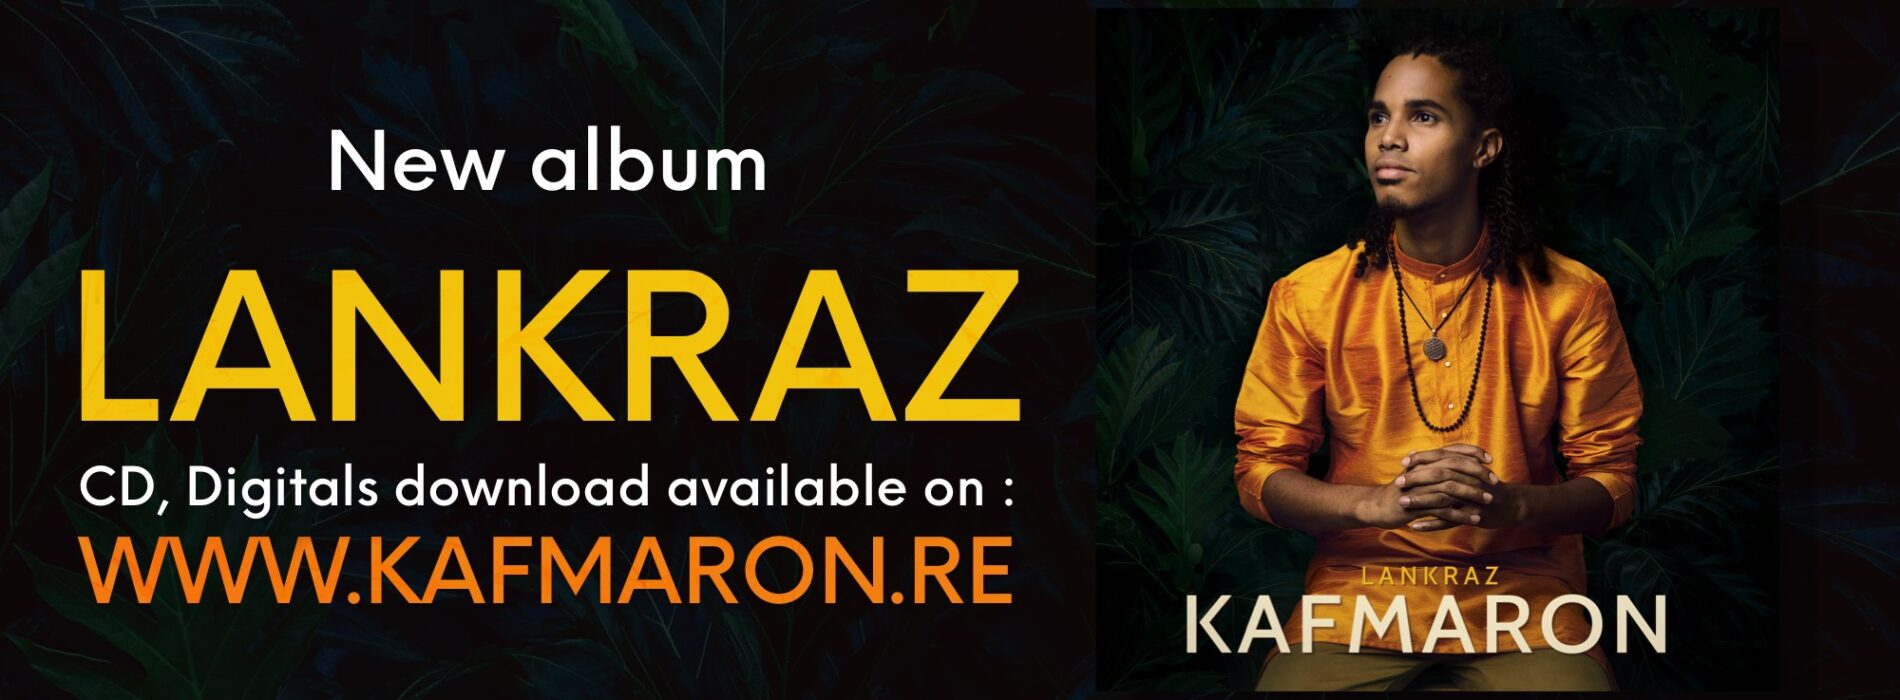 Découvre l’album de KAFMARON « LANKRAZ » 8 clips videos disponible – Juillet 2021